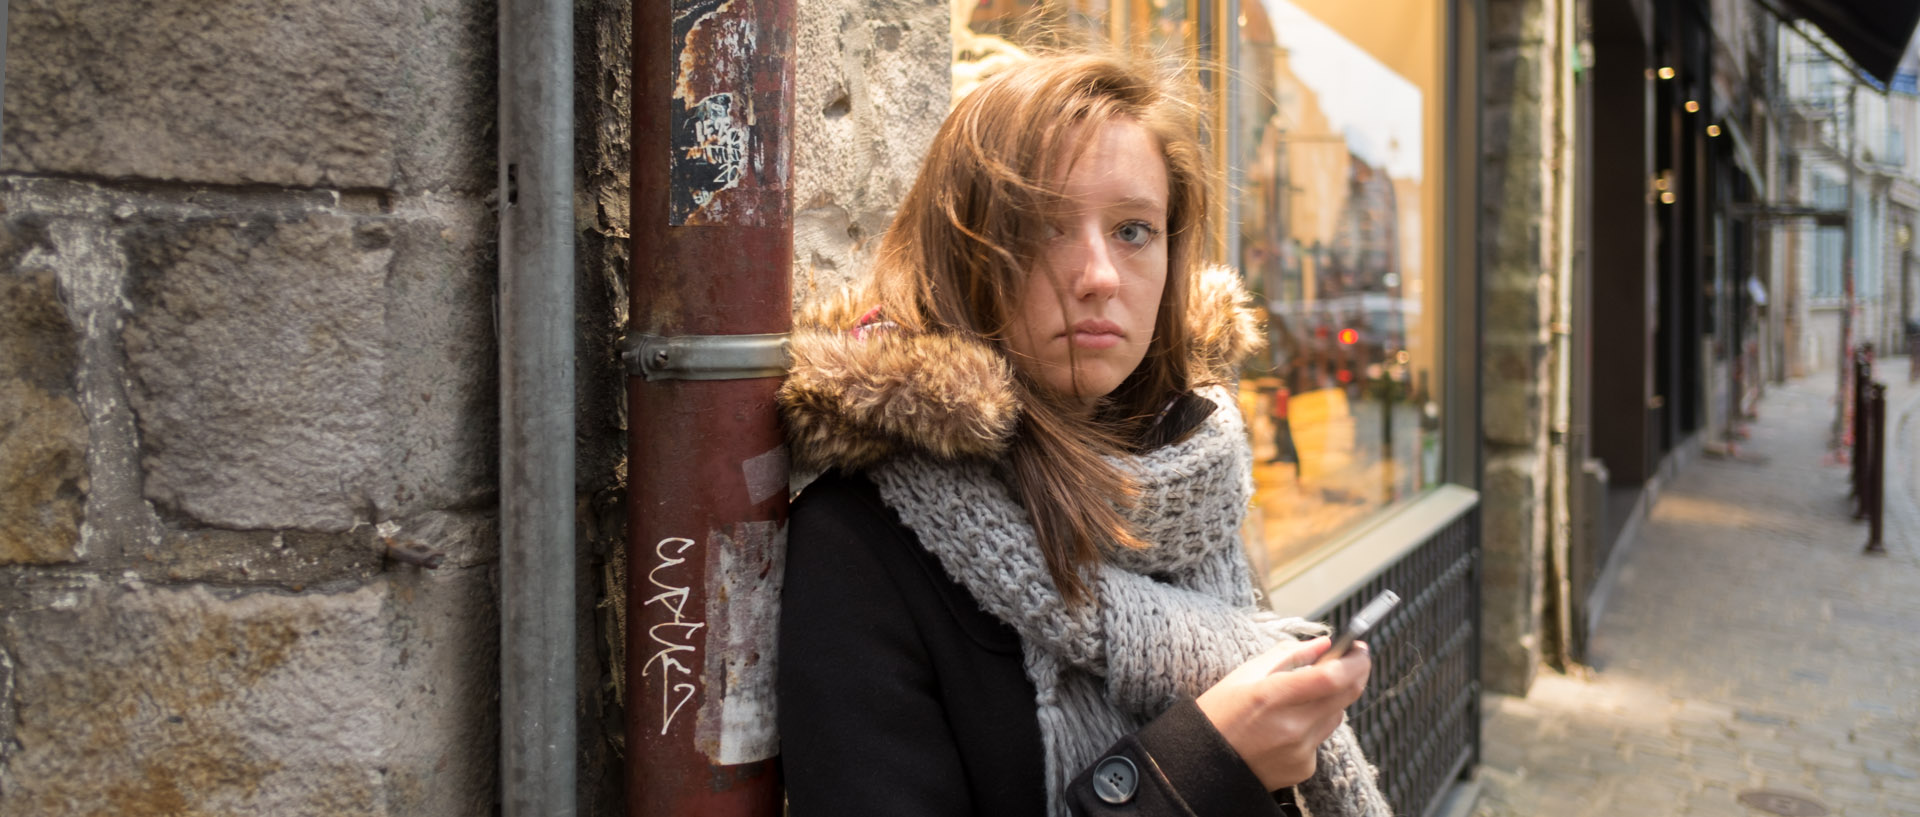 Jeune fille avec son téléphone portable, rue Basse, à Lille.